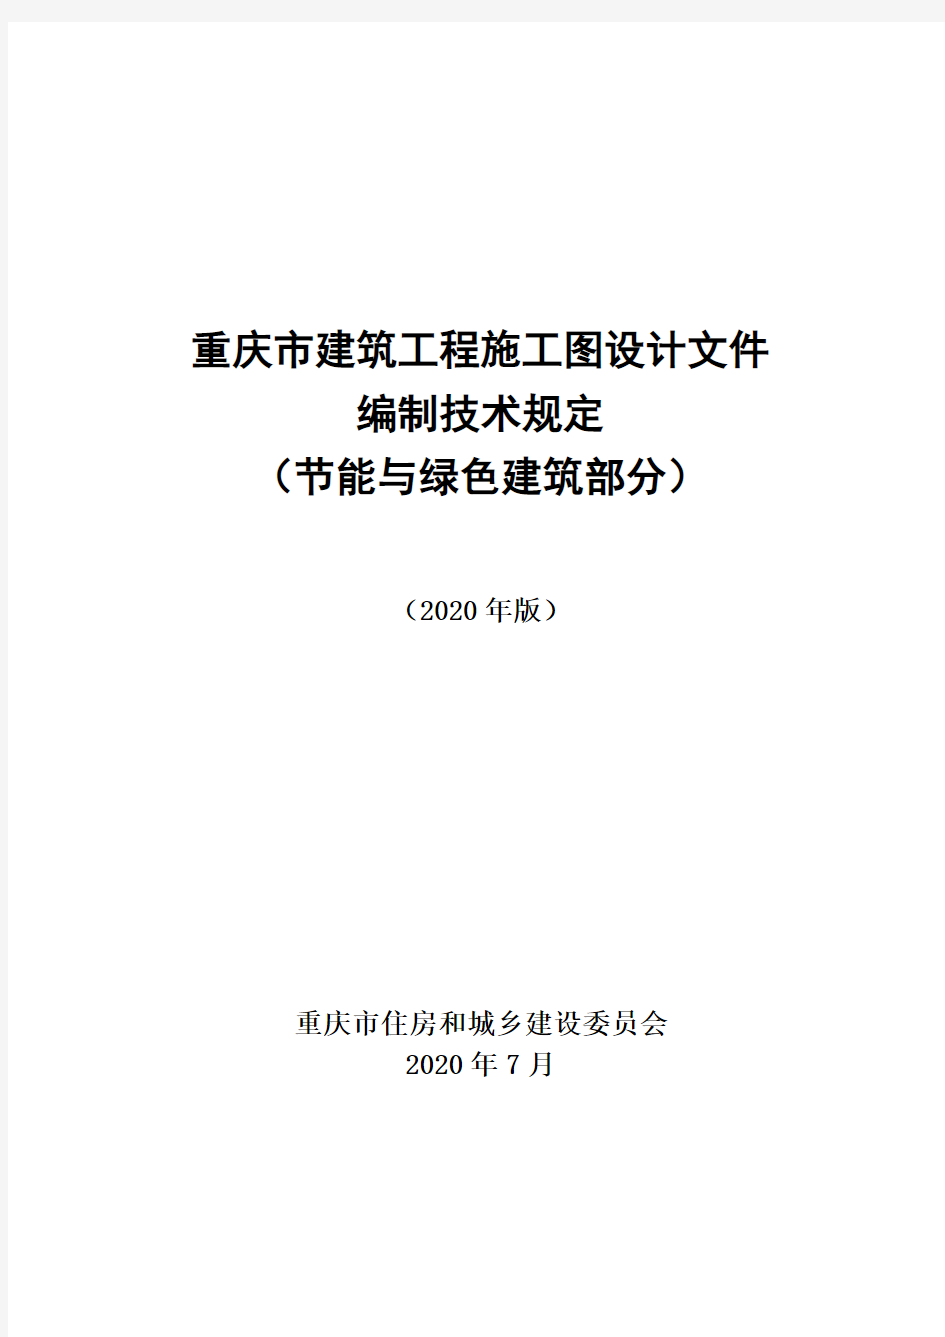 重庆市建筑工程施工图设计文件编制技术规定(节能与绿色建筑部分)